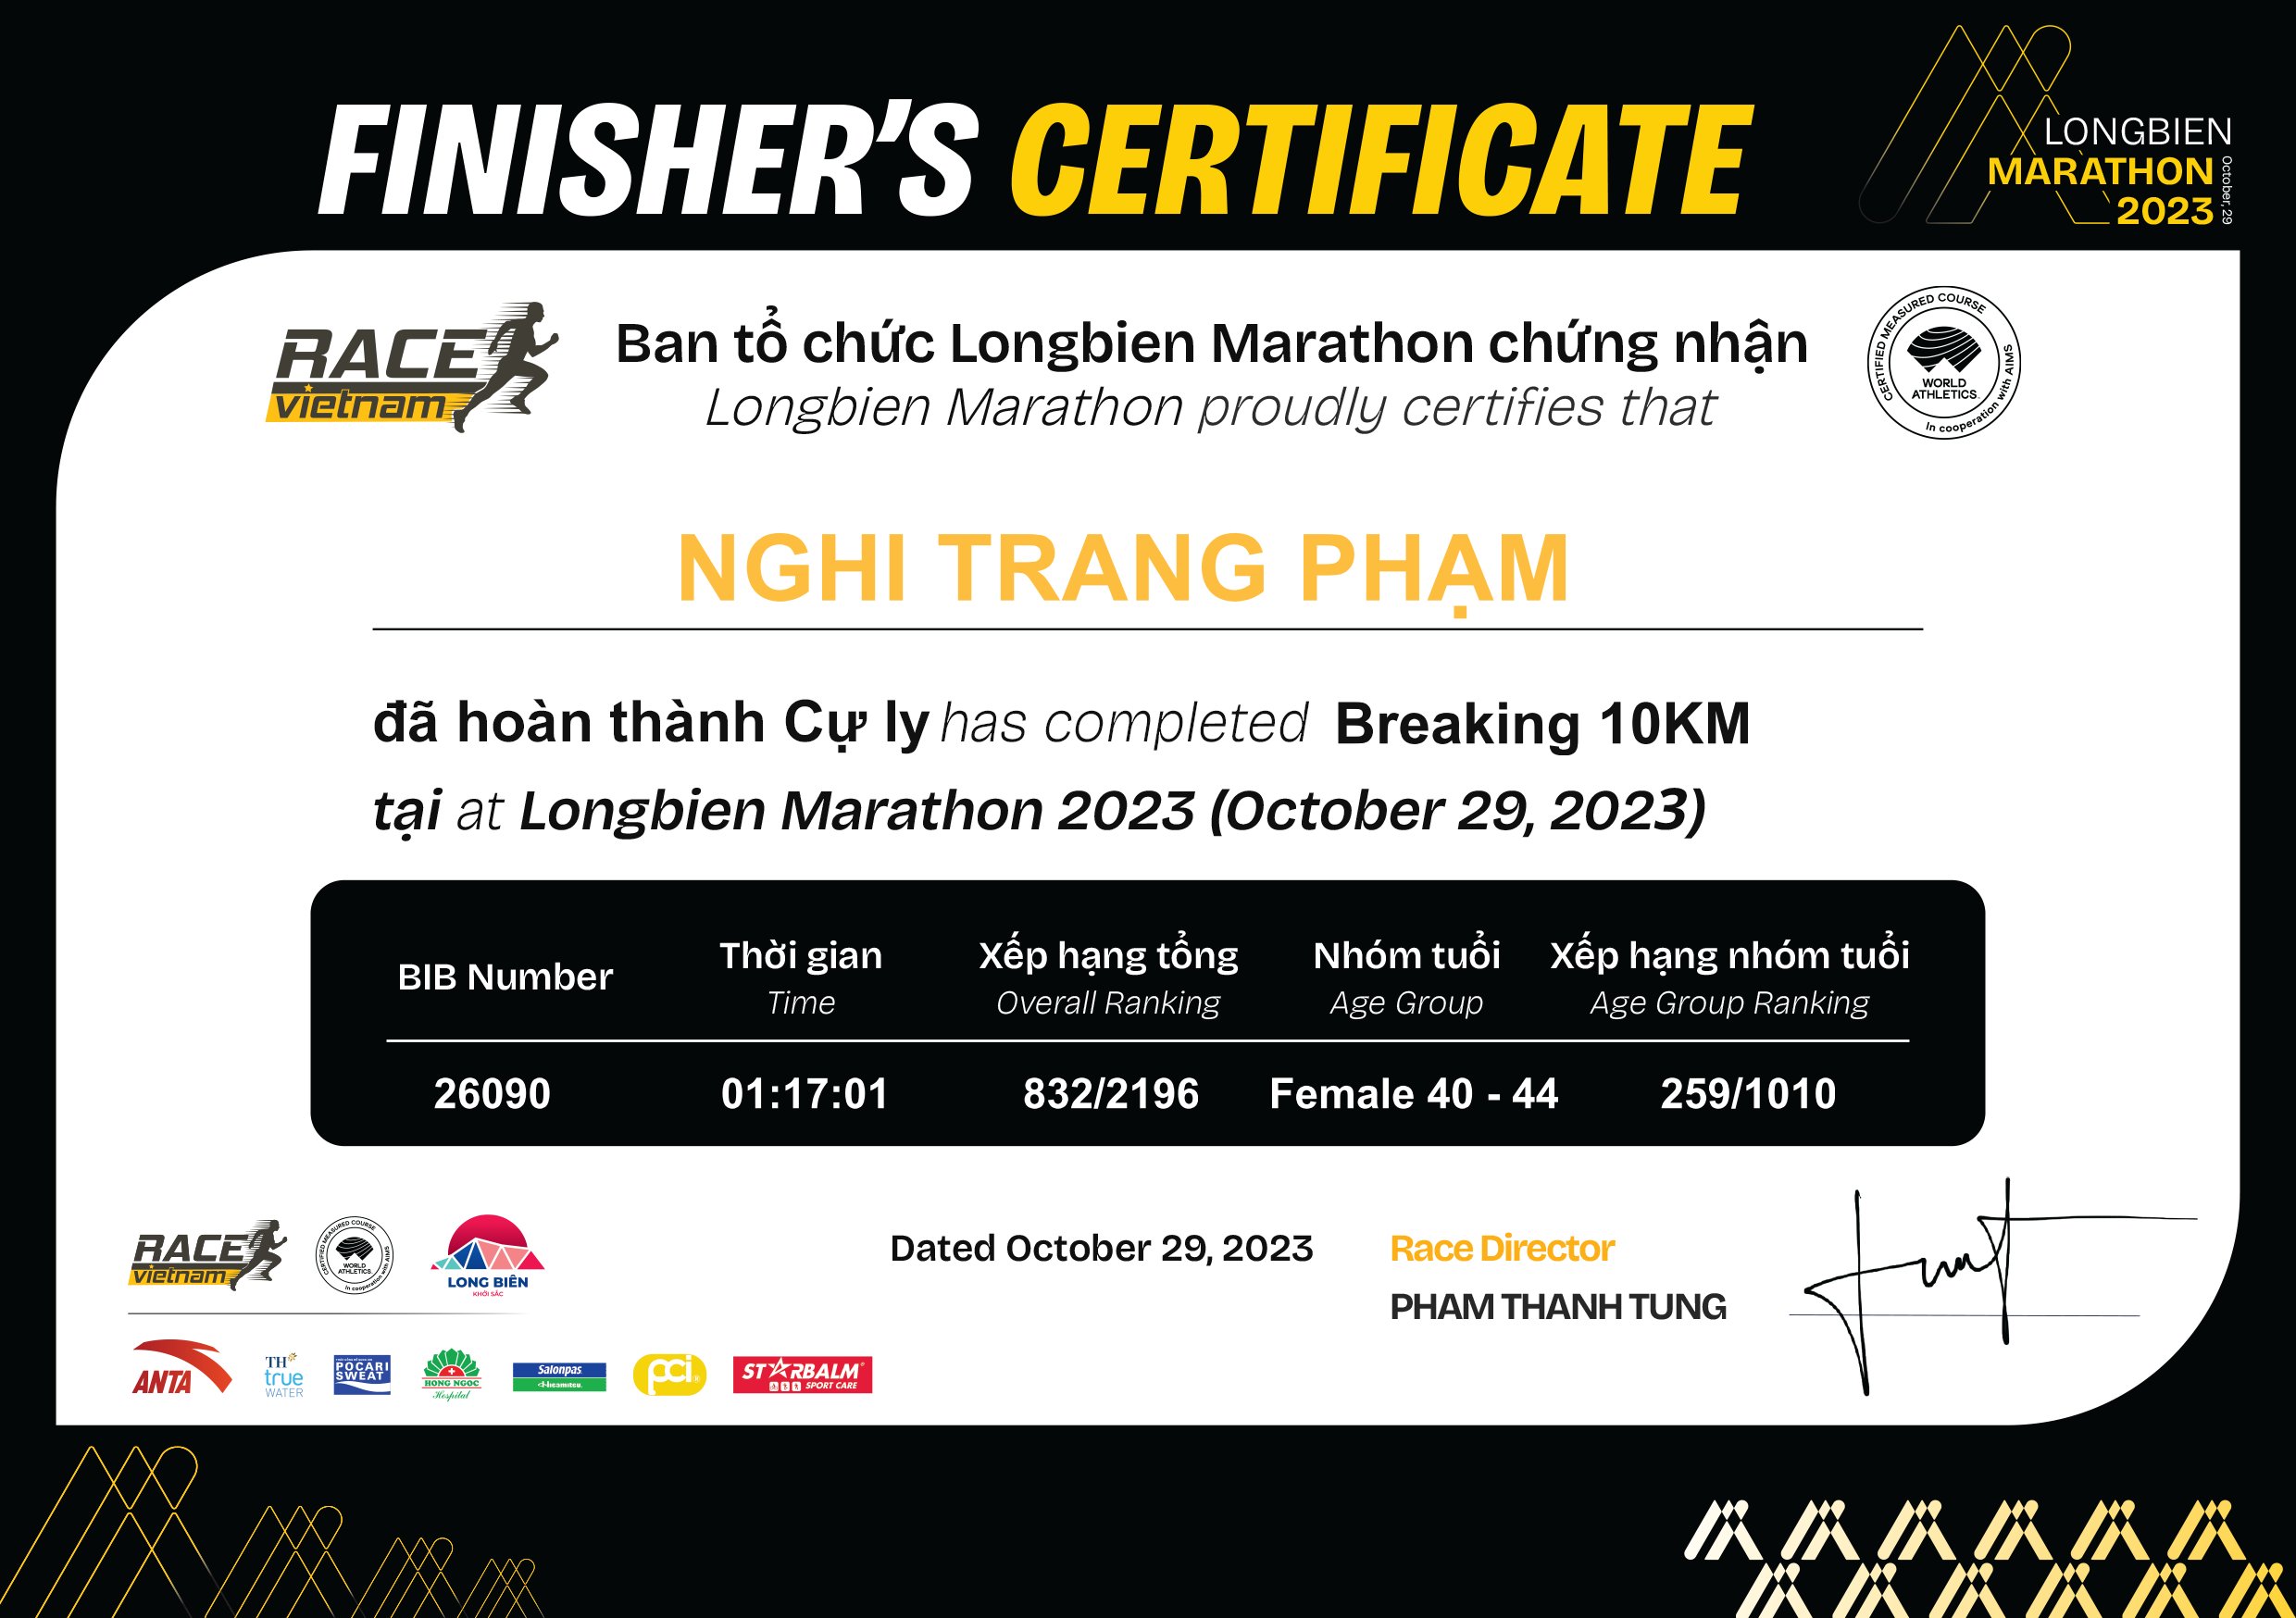 26090 - Nghi Trang Phạm